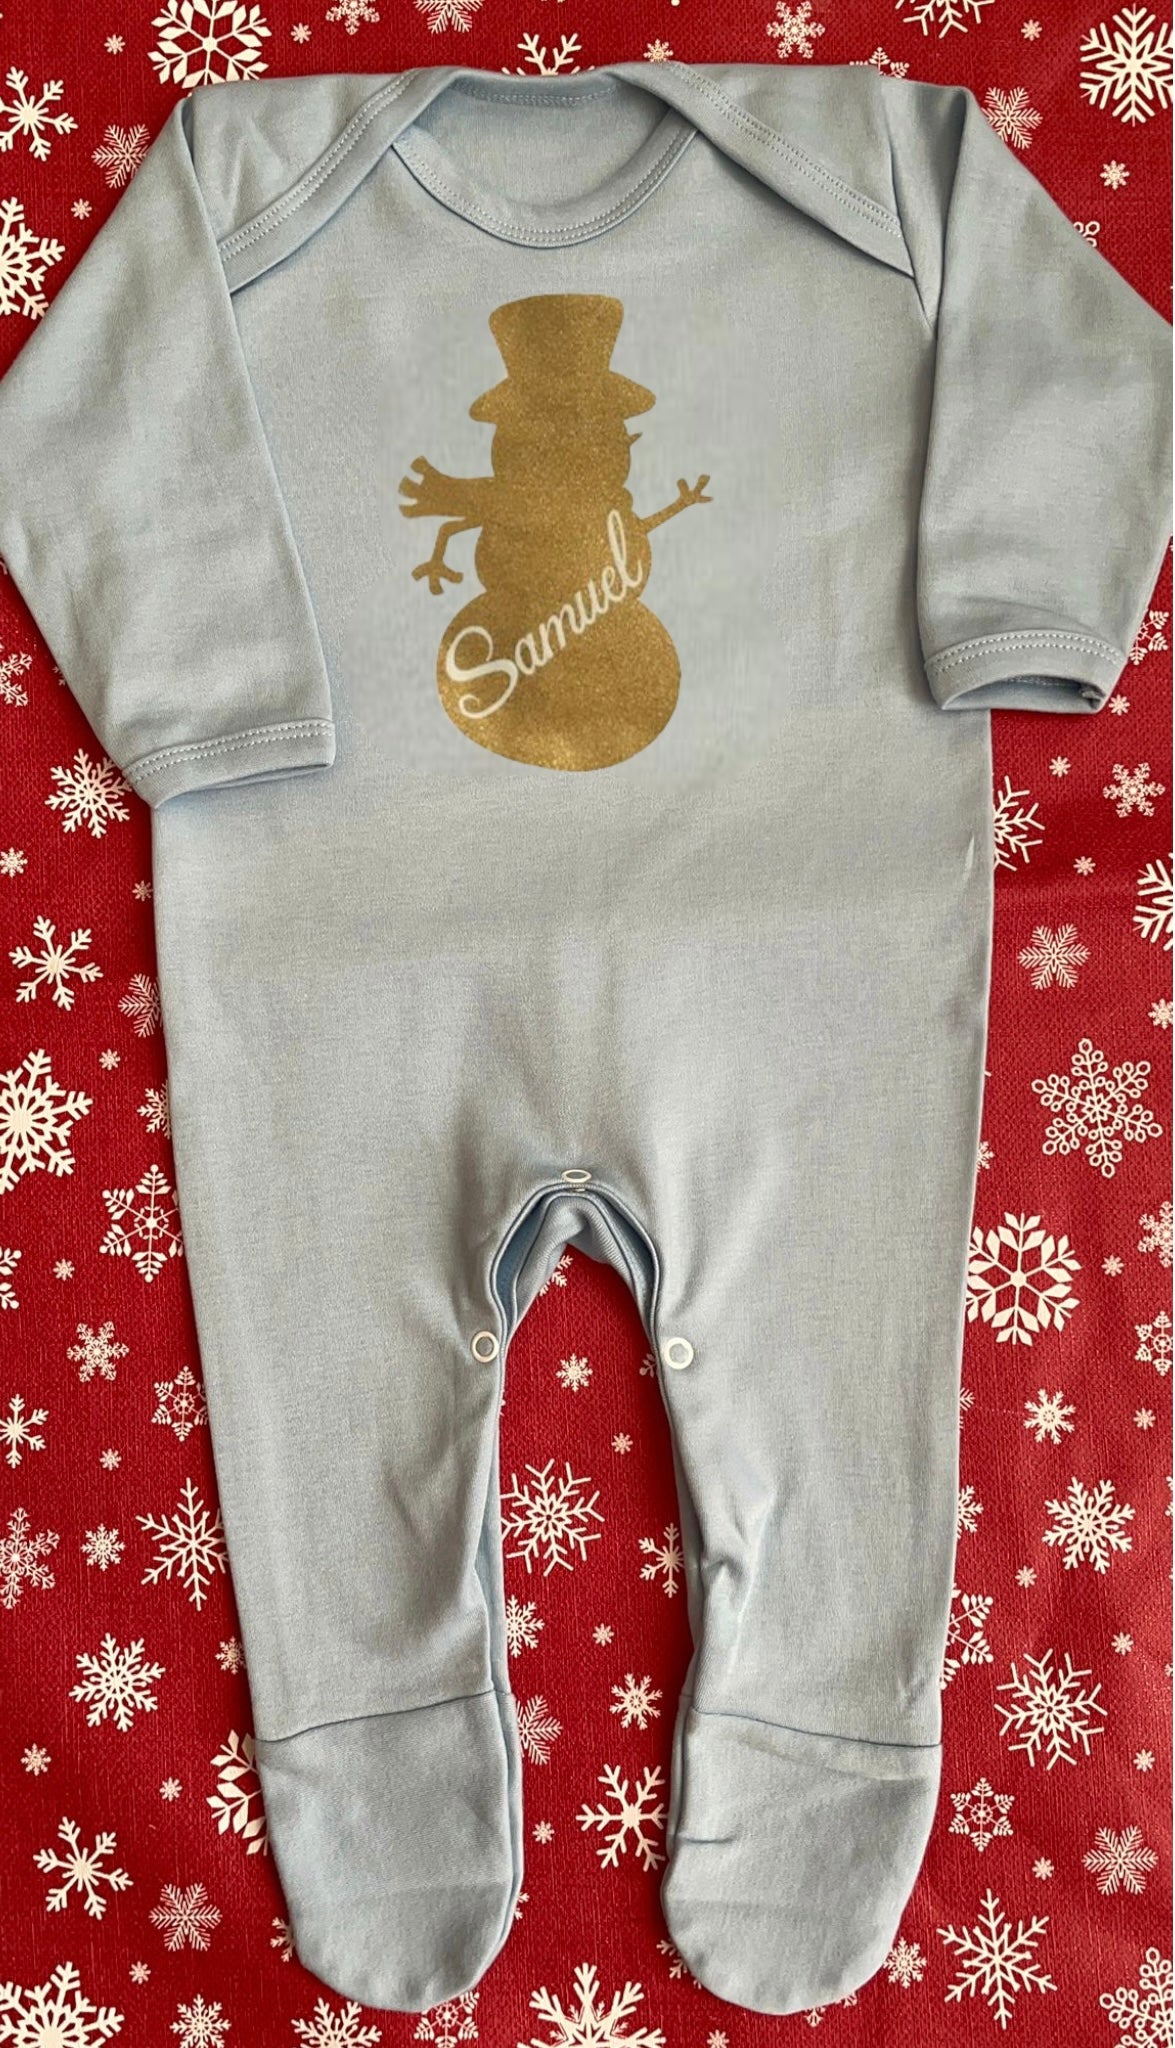 Personalised Christmas Pyjamas - 100% cotton xmas gift. Christmas eve - Snowman